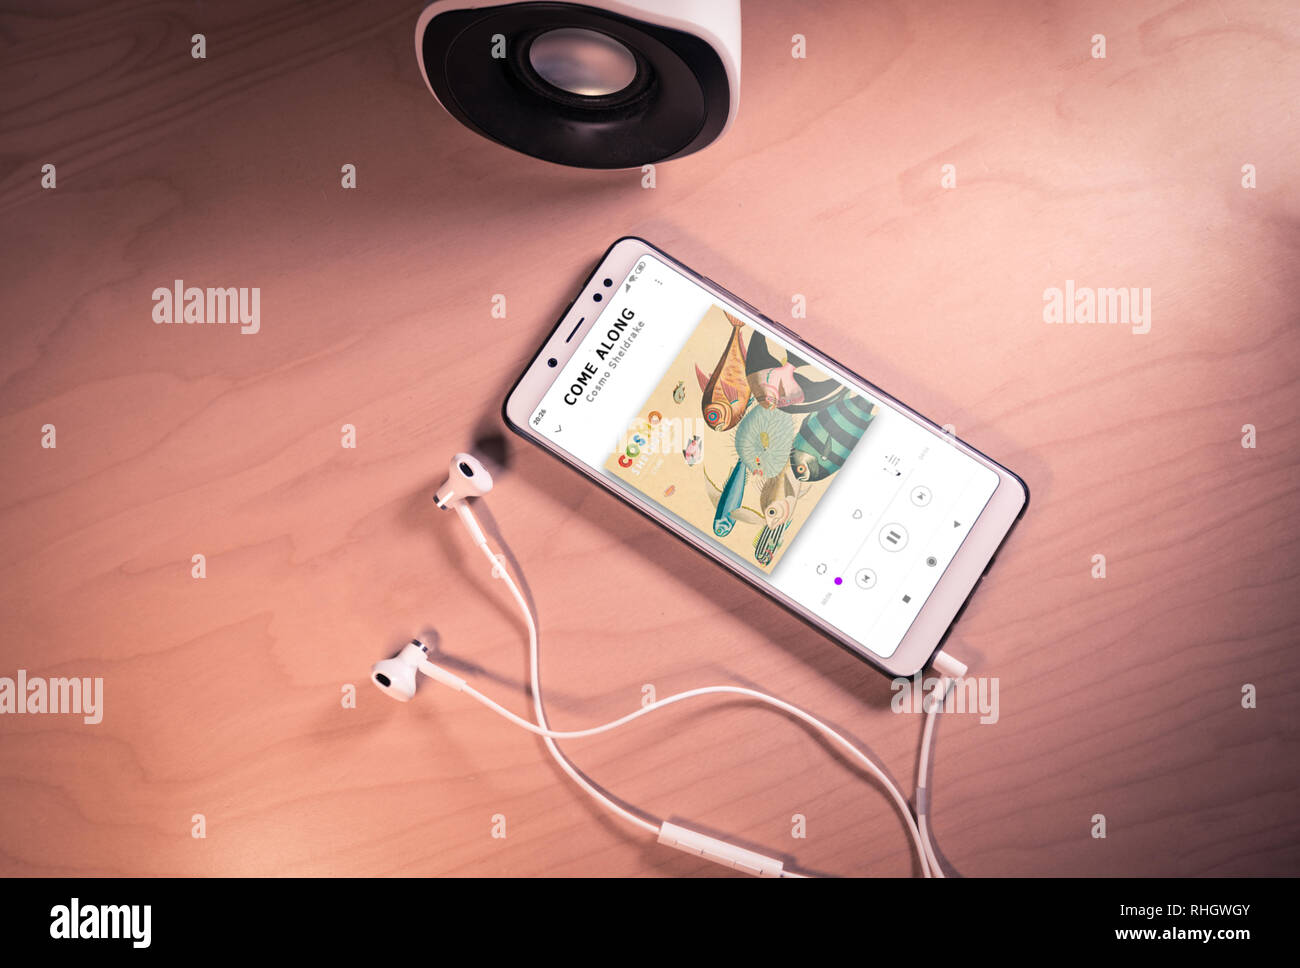 Top visualizza immagine di smartphone,auricolari e altoparlanti con Cosmo Volpoca di canzone sullo schermo Foto Stock